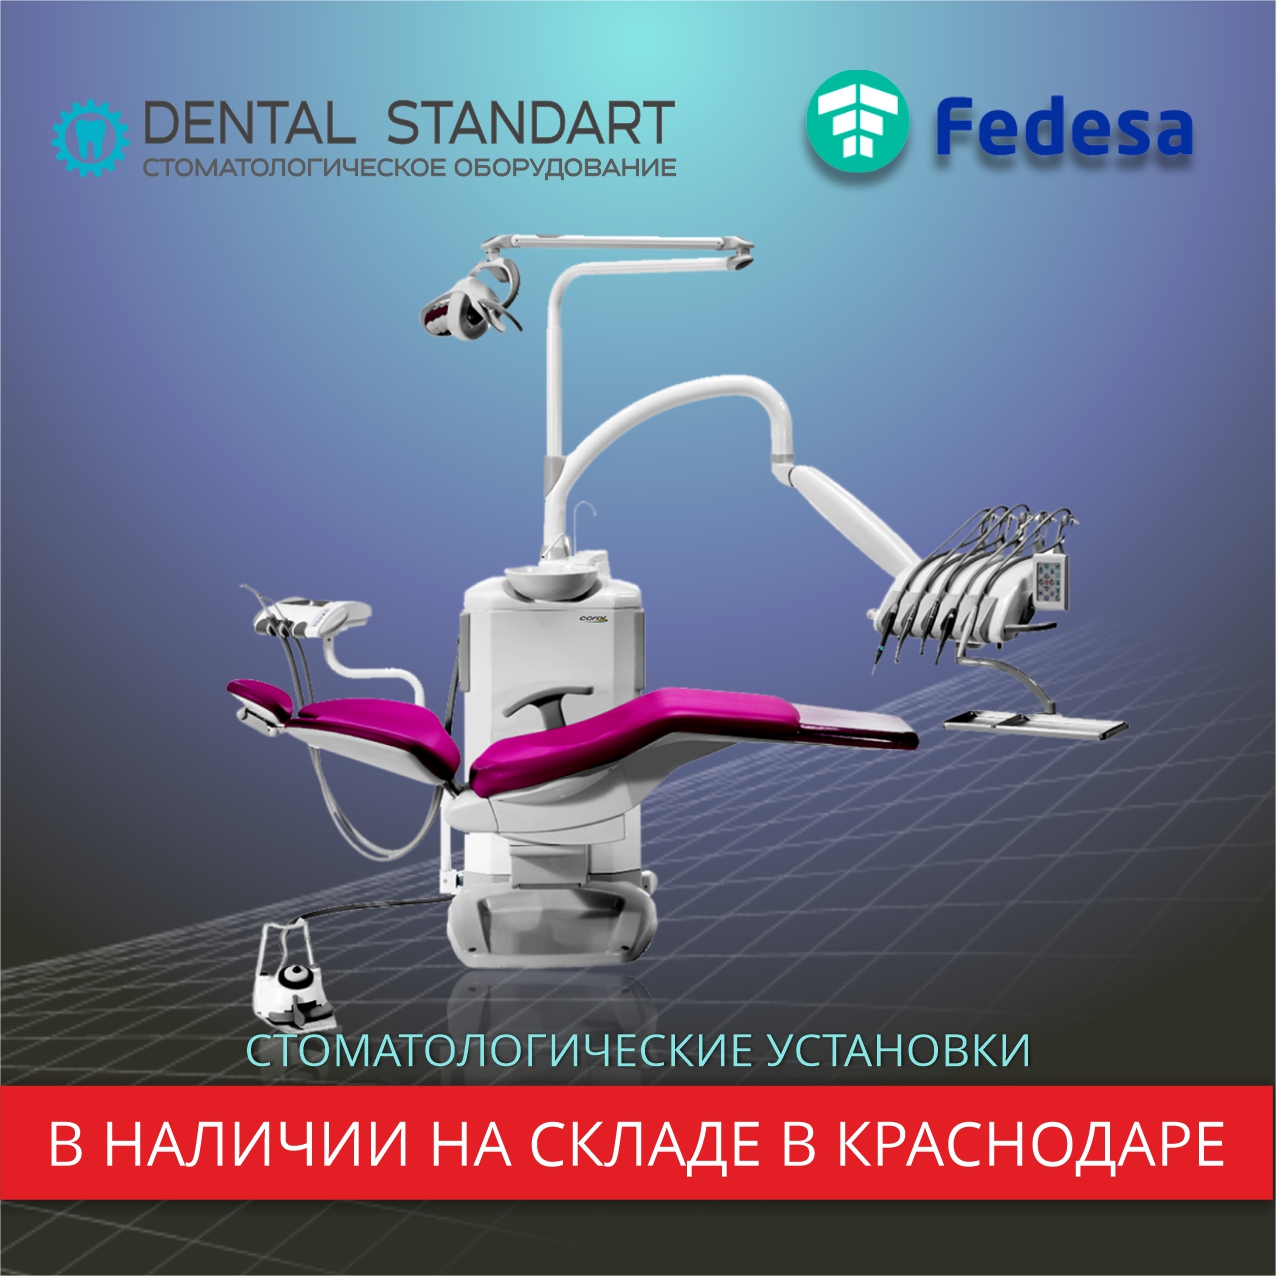 Стоматологические установки FEDESA и другое медицинское оборудование в наличии на складе в Краснодаре.